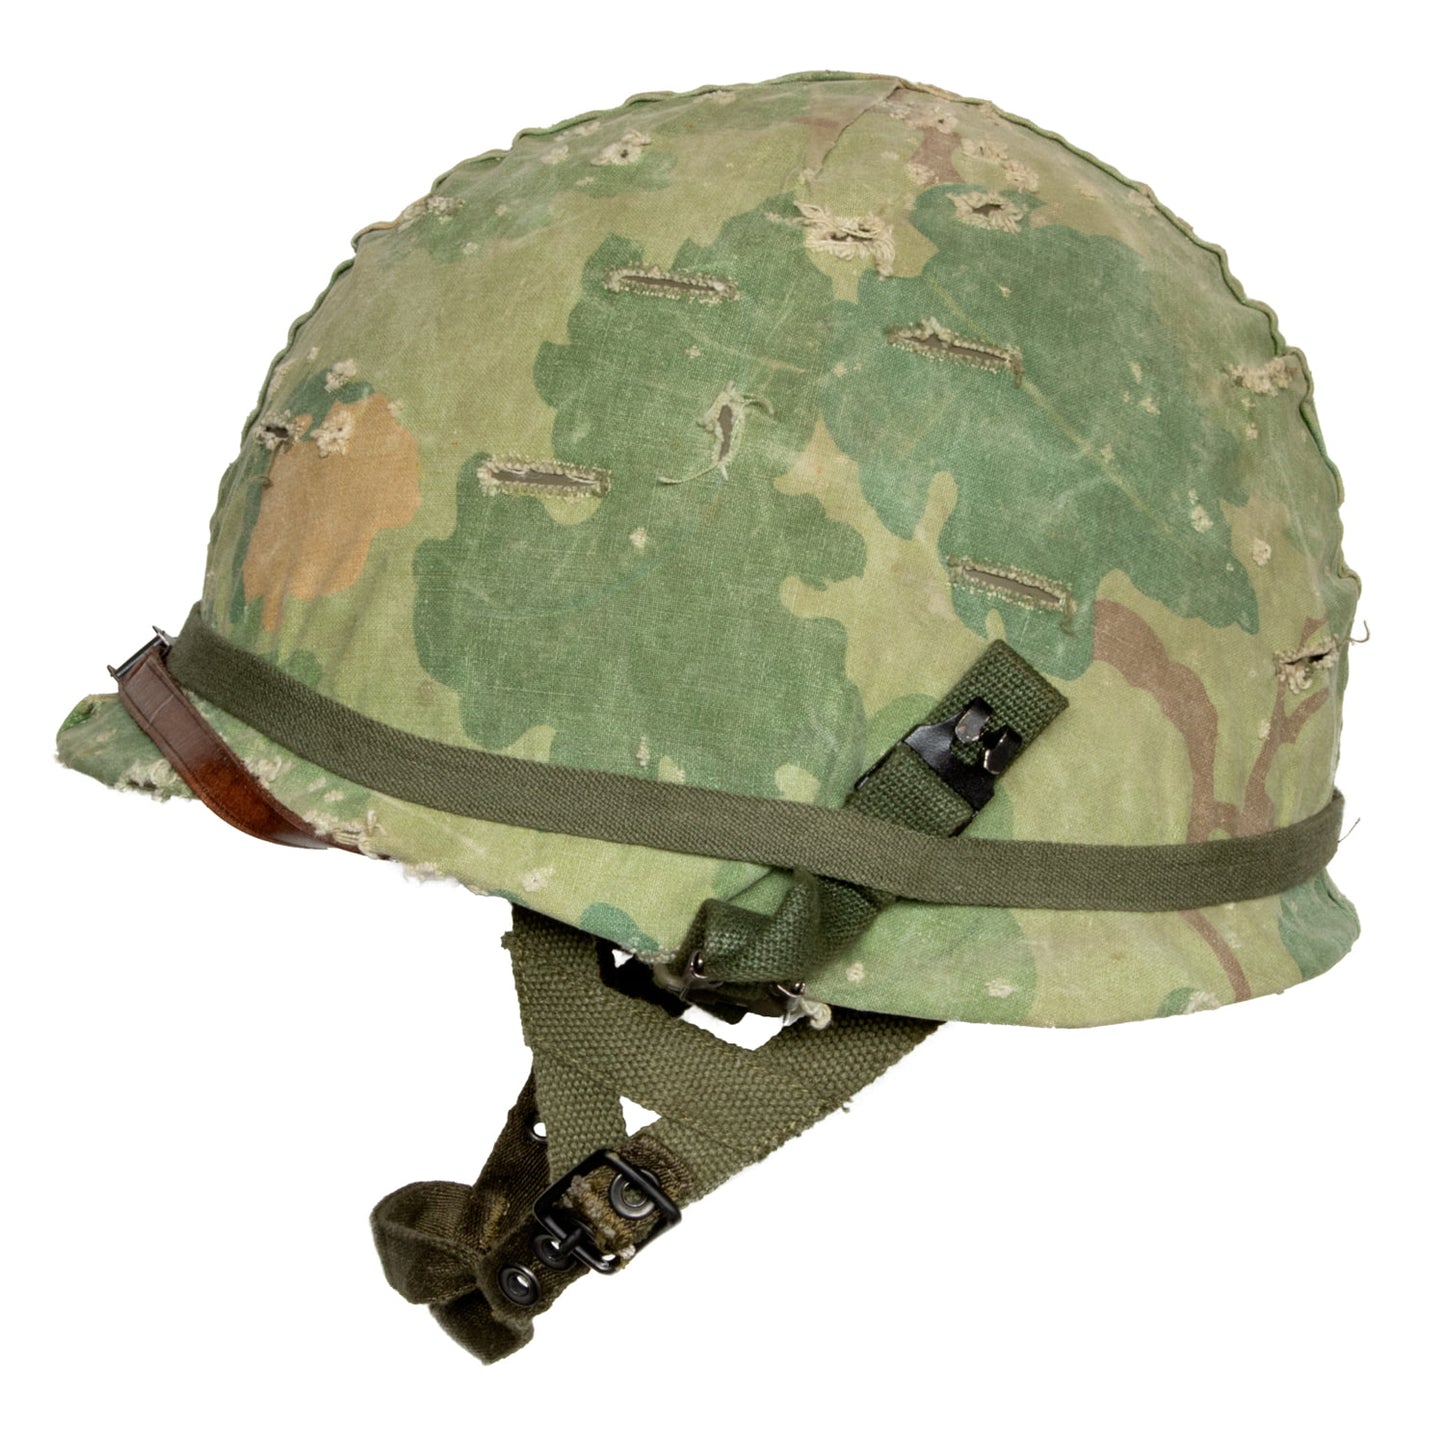 Casque Complet Vietnam Parachutiste Edition Limitée précoce vue de profil gauche